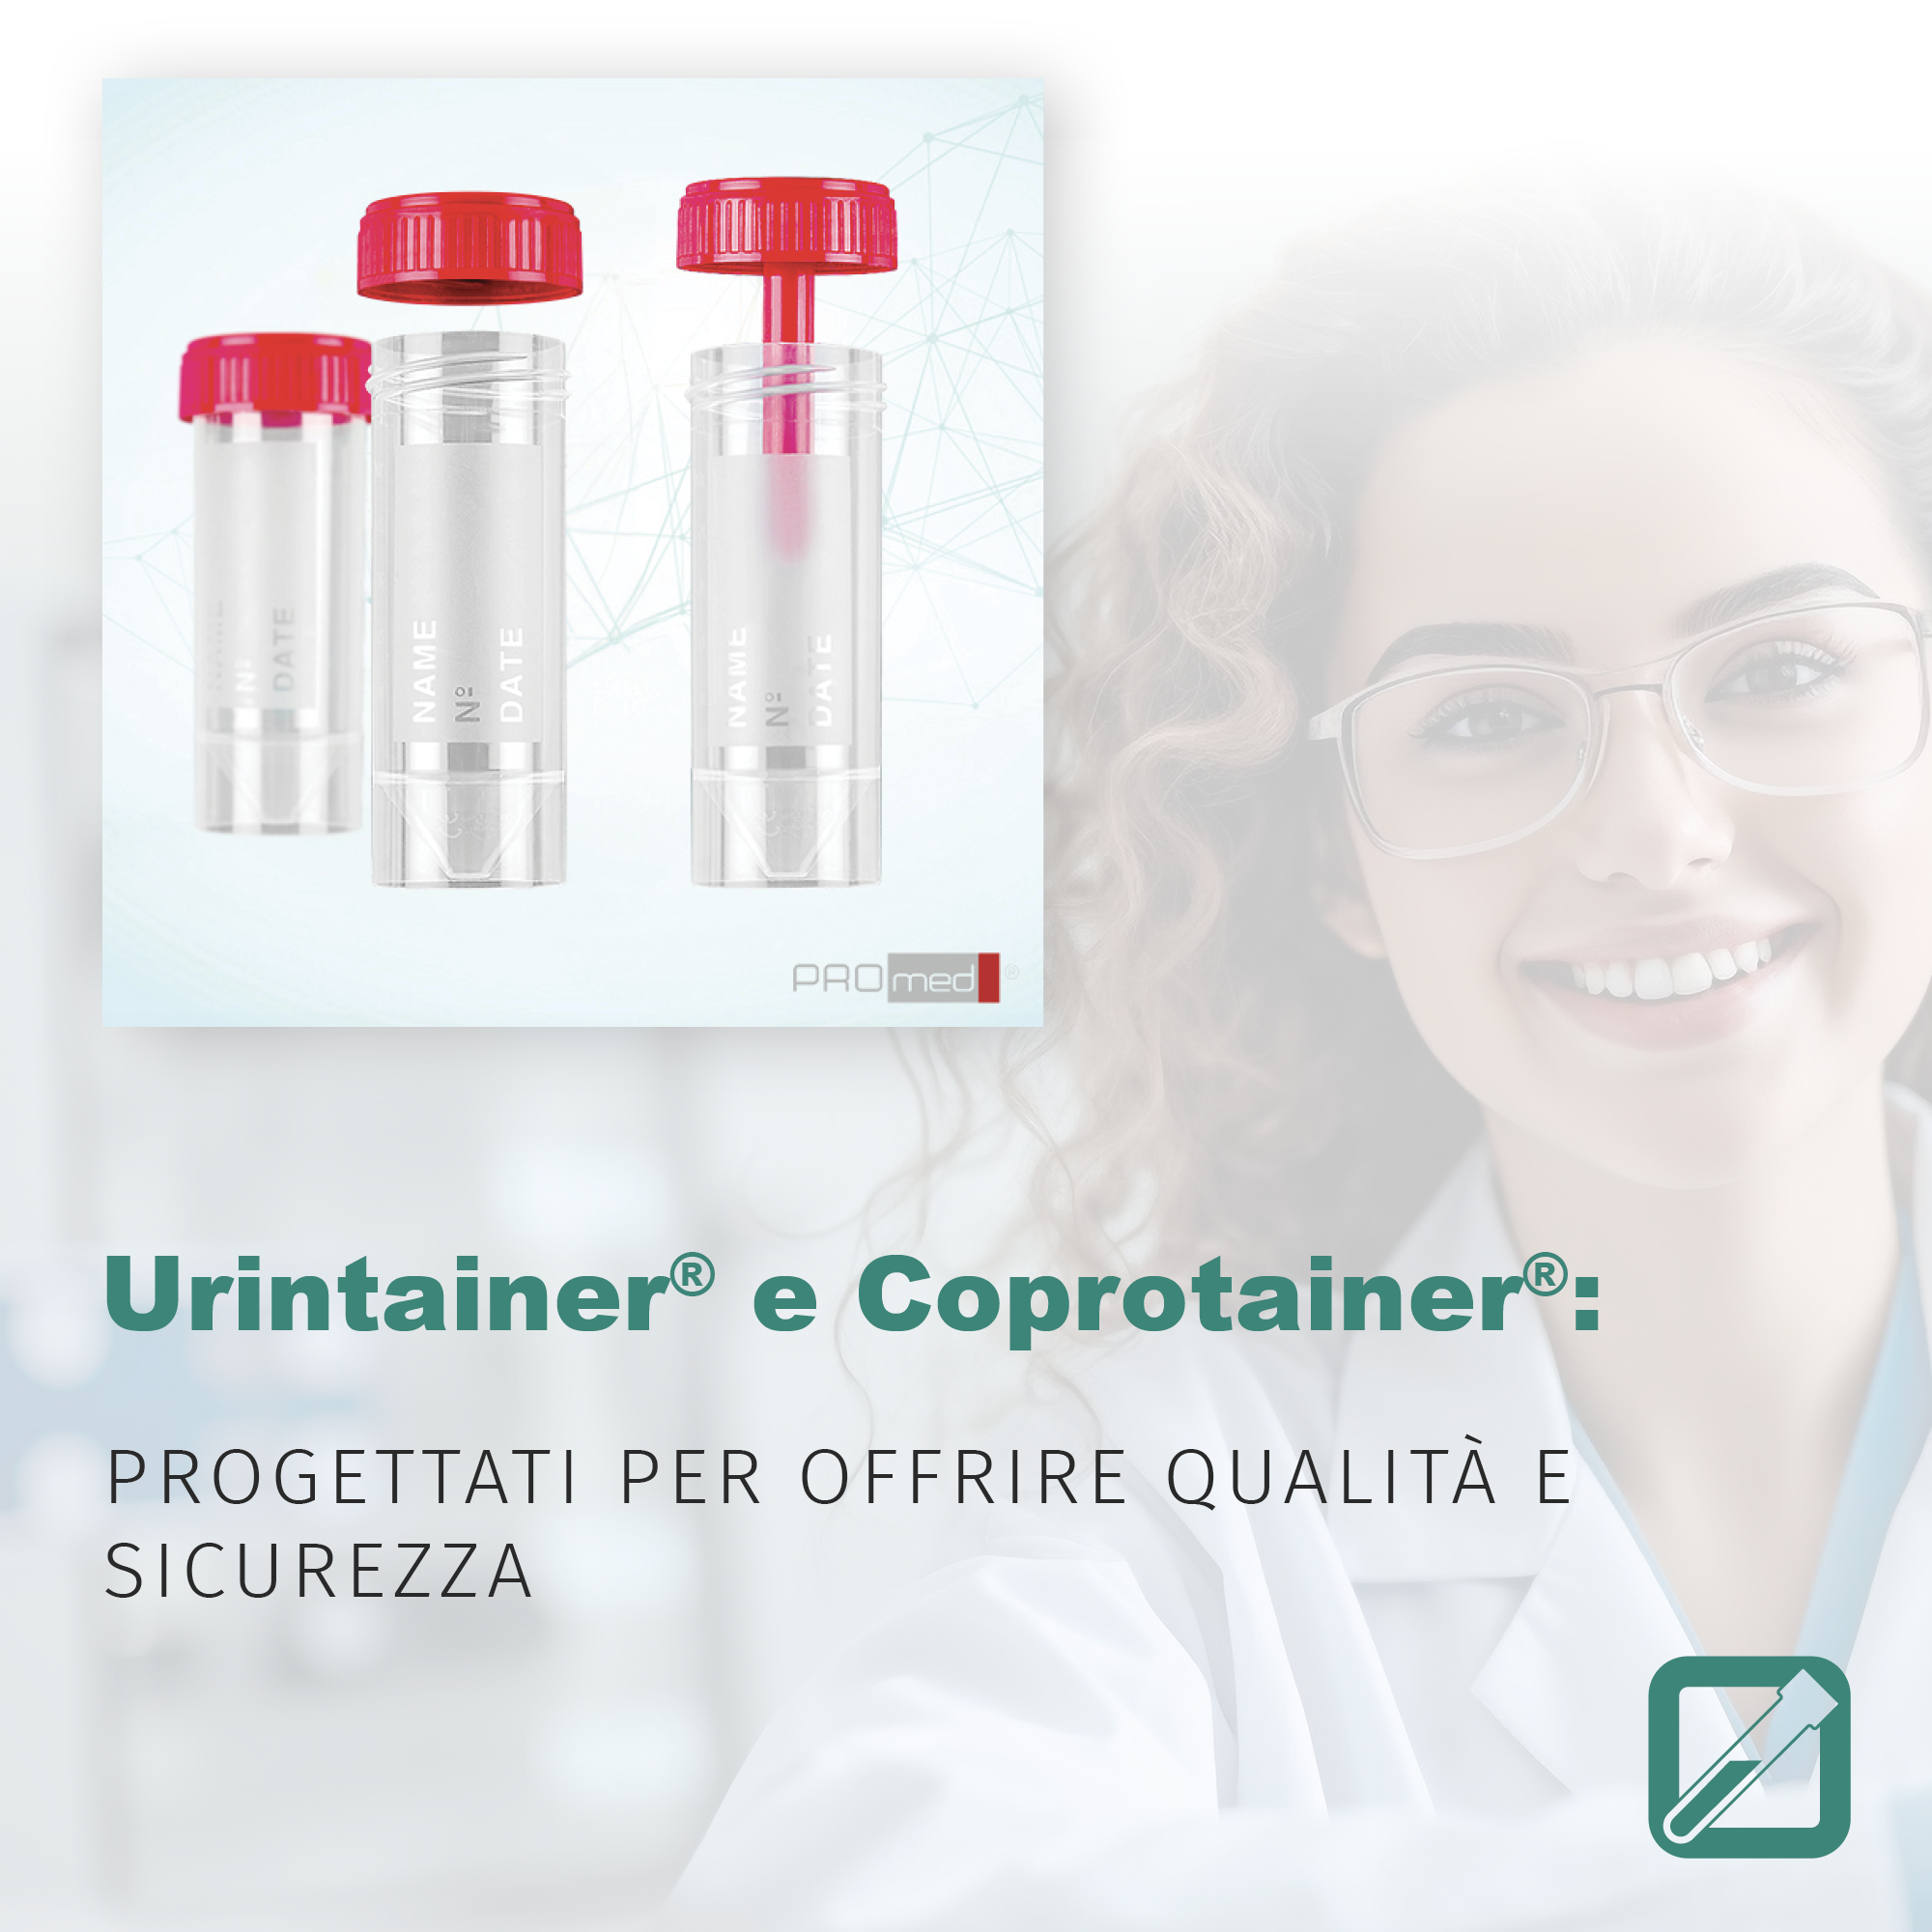 Urintainer® e Coprotainer®: progettati per offrire qualità e sicurezza